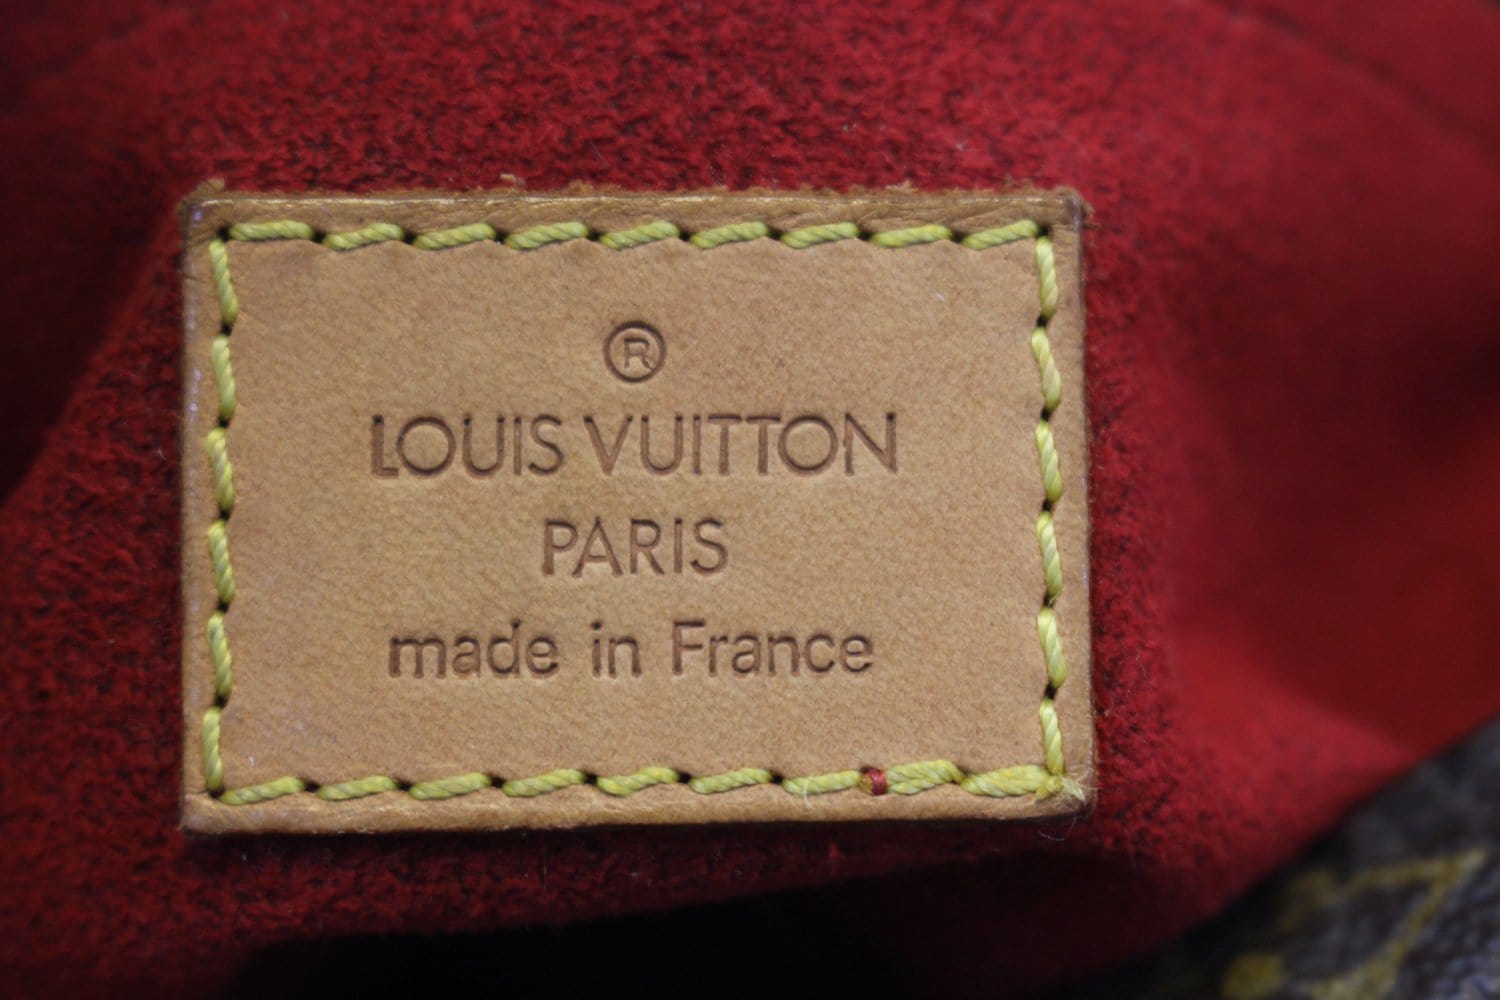 Louis Vuitton croissant pm – thankunext.us